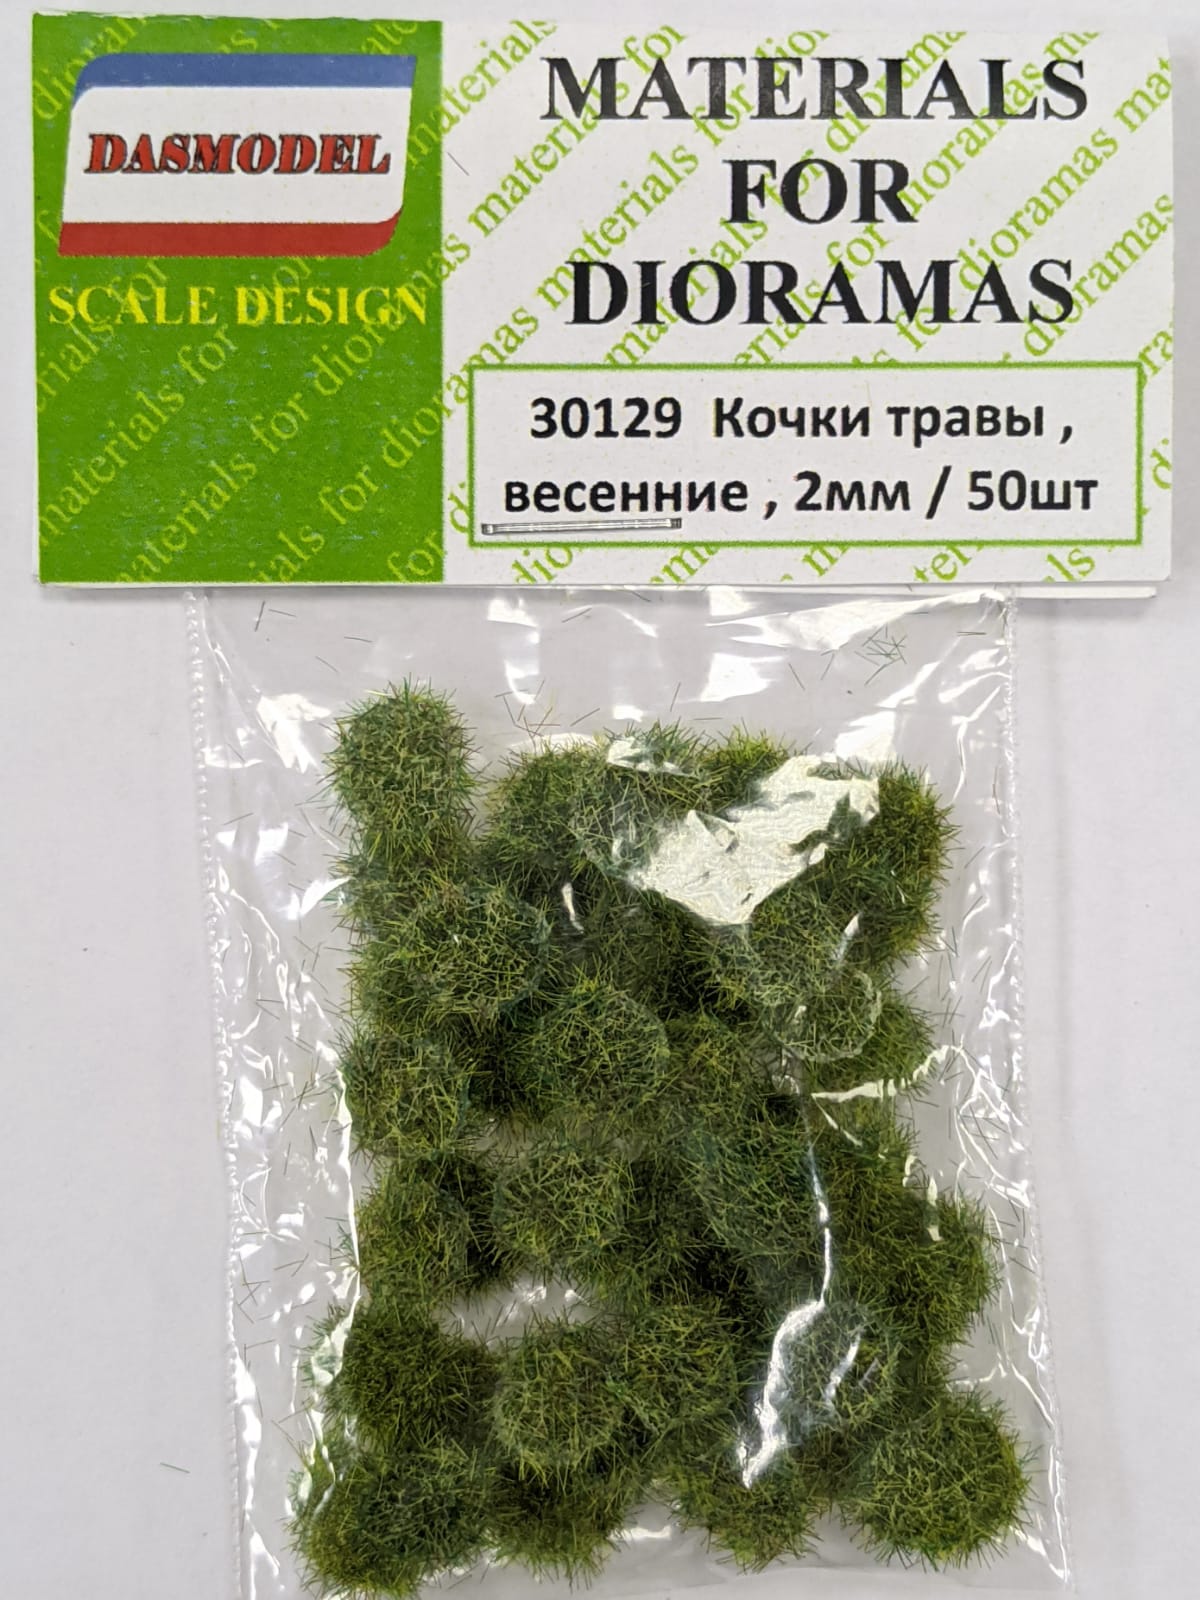 30129  материалы для диорам  Кочки травы, весенние, 2мм / 50шт